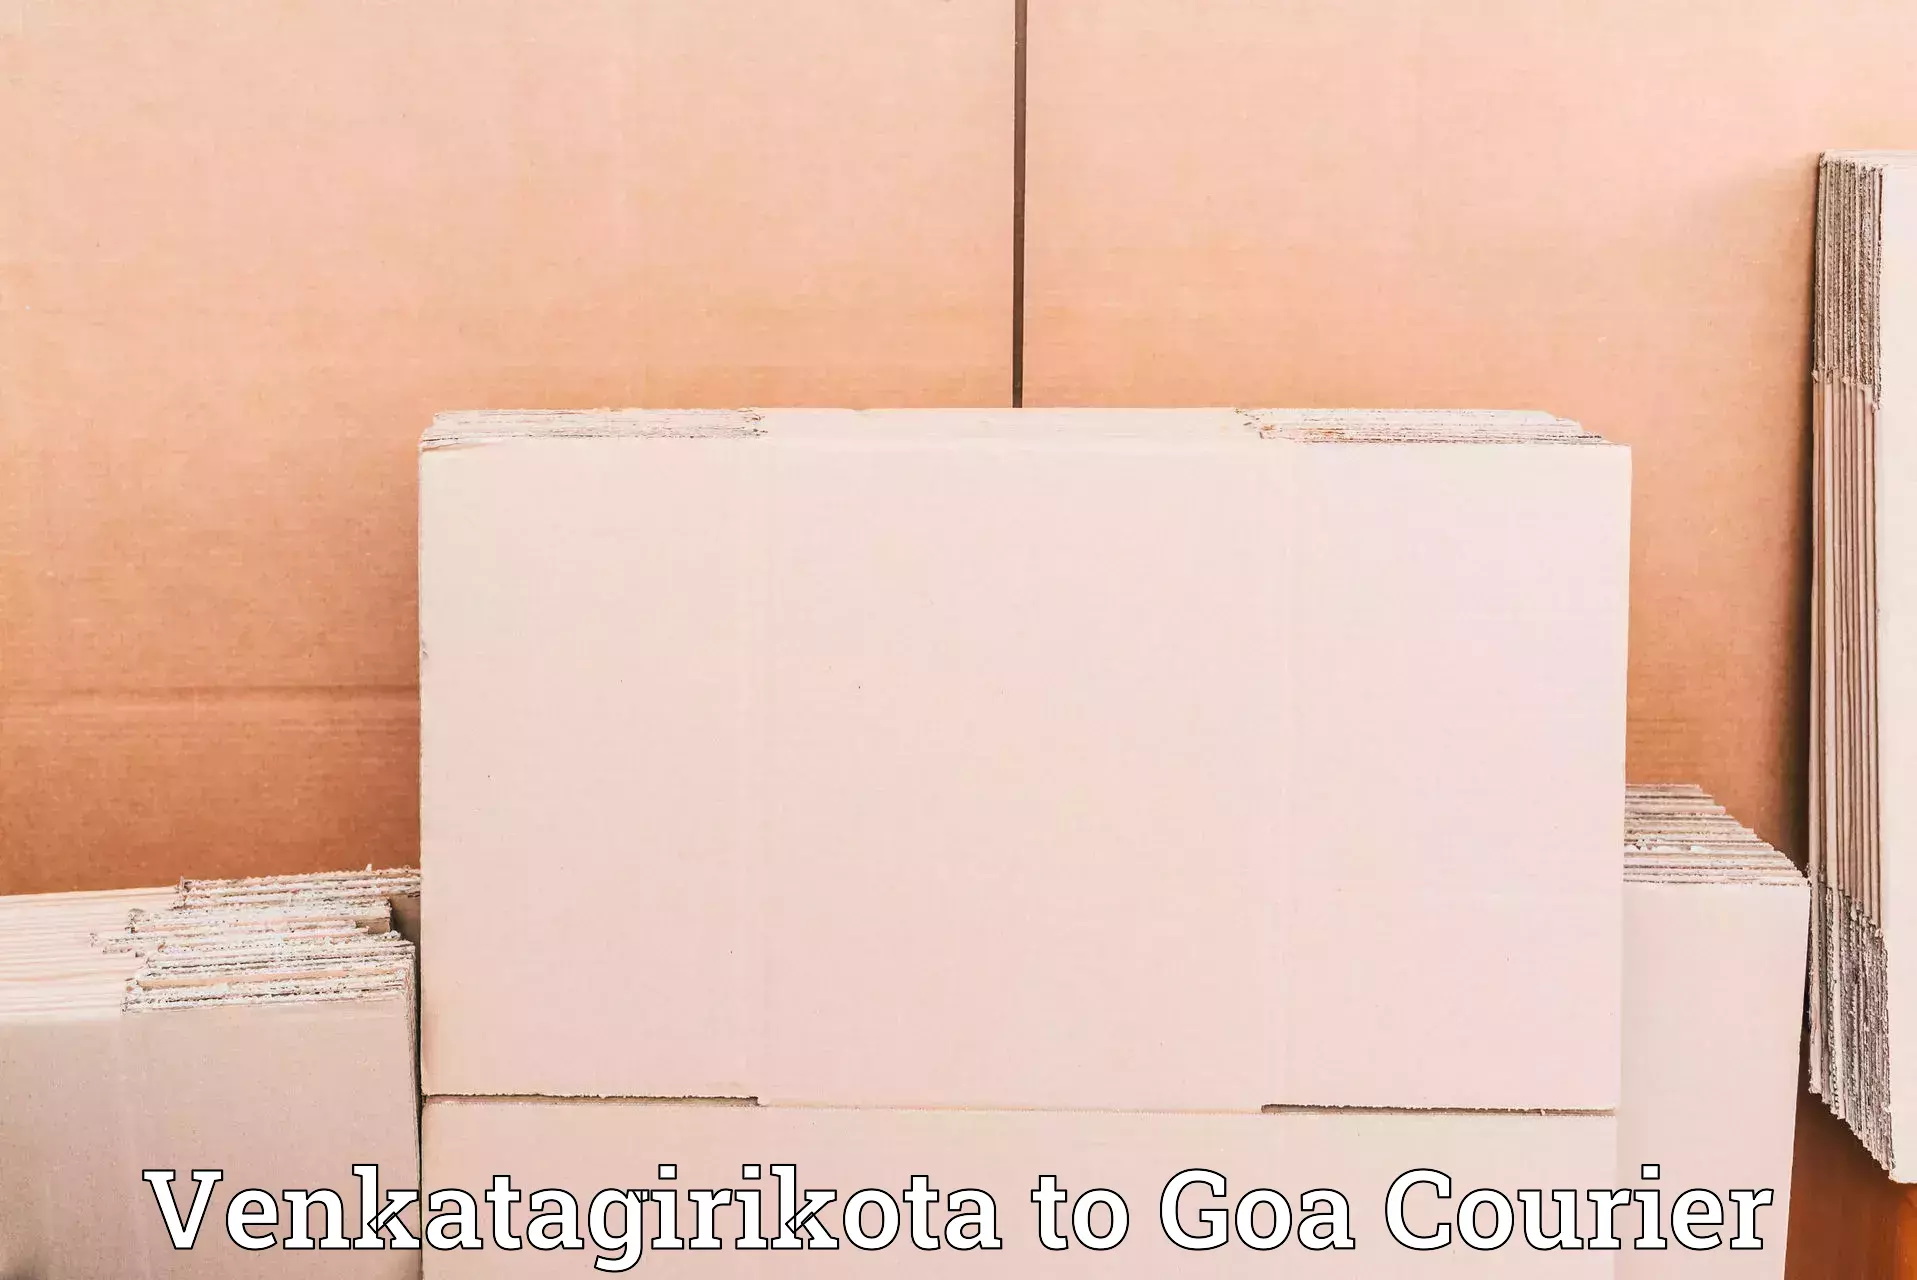 Cost-effective shipping solutions in Venkatagirikota to Ponda